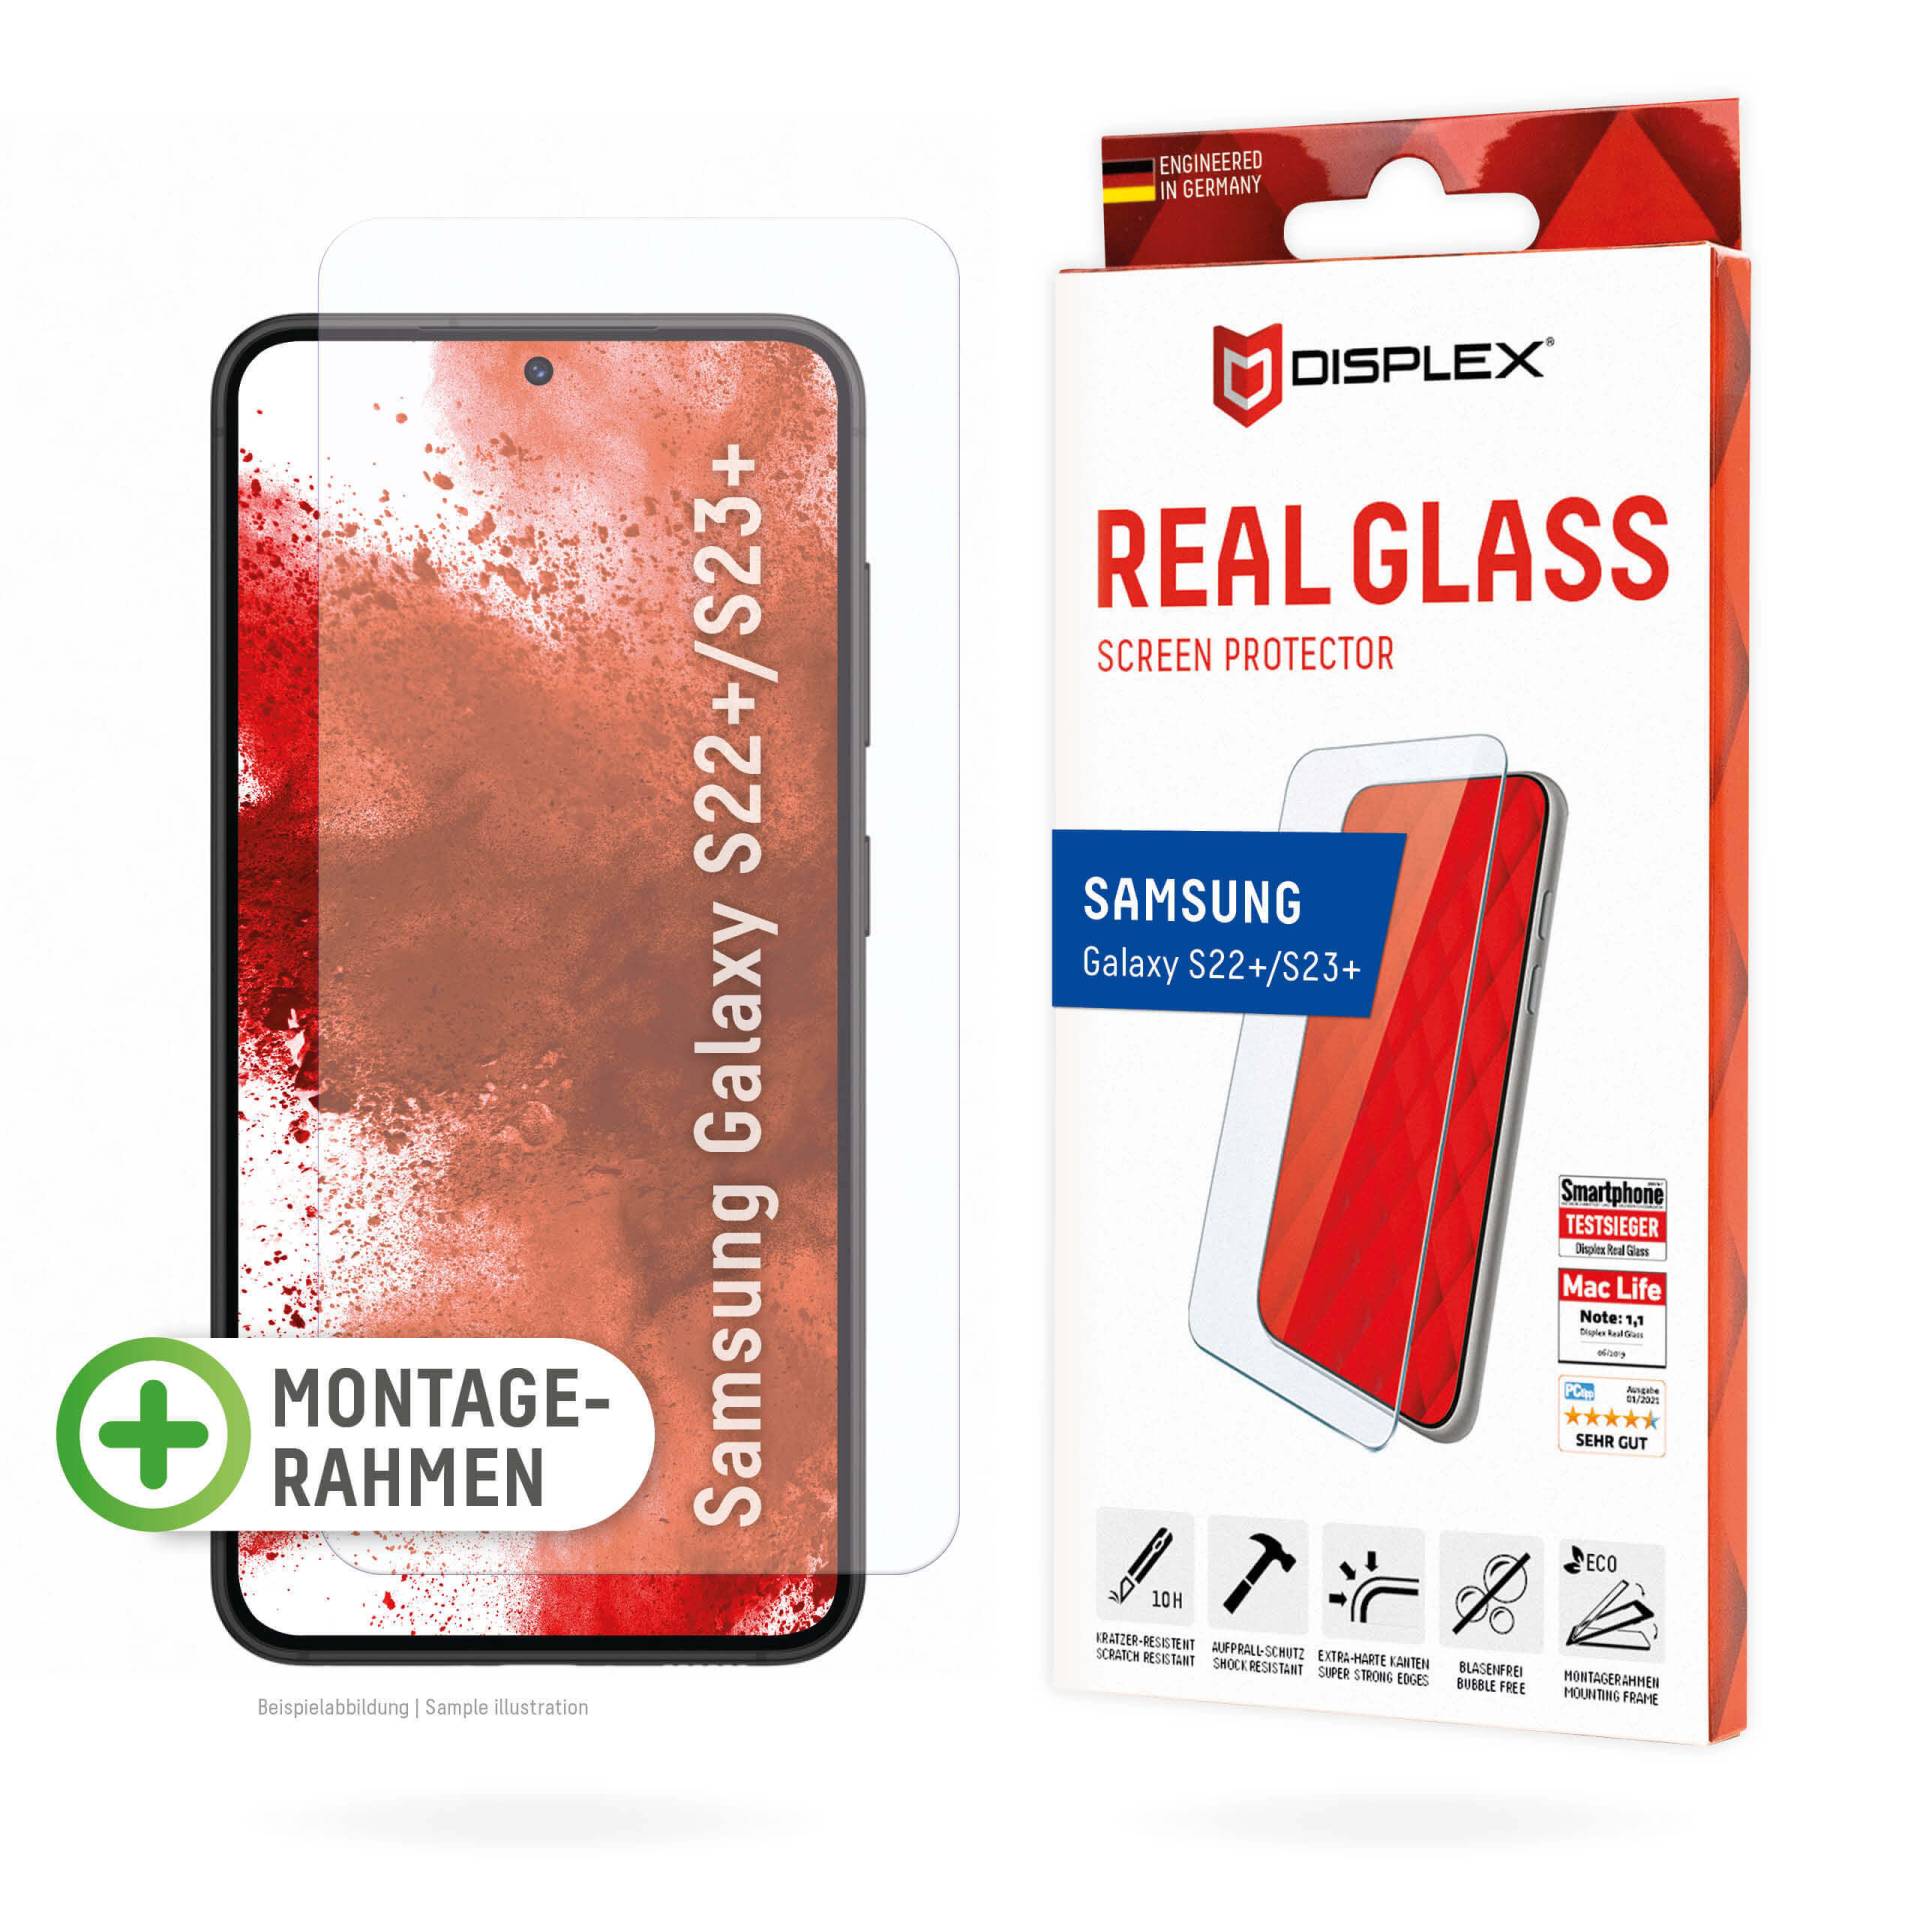 DISPLEX Panzerglas 2D/Clear (10H) für Samsung Galaxy S22+/S23+ Eco-Montagerahmen, Tempered Glas, kratzer-resistente Glasschutzfolie, hüllenfreundlich von Displex